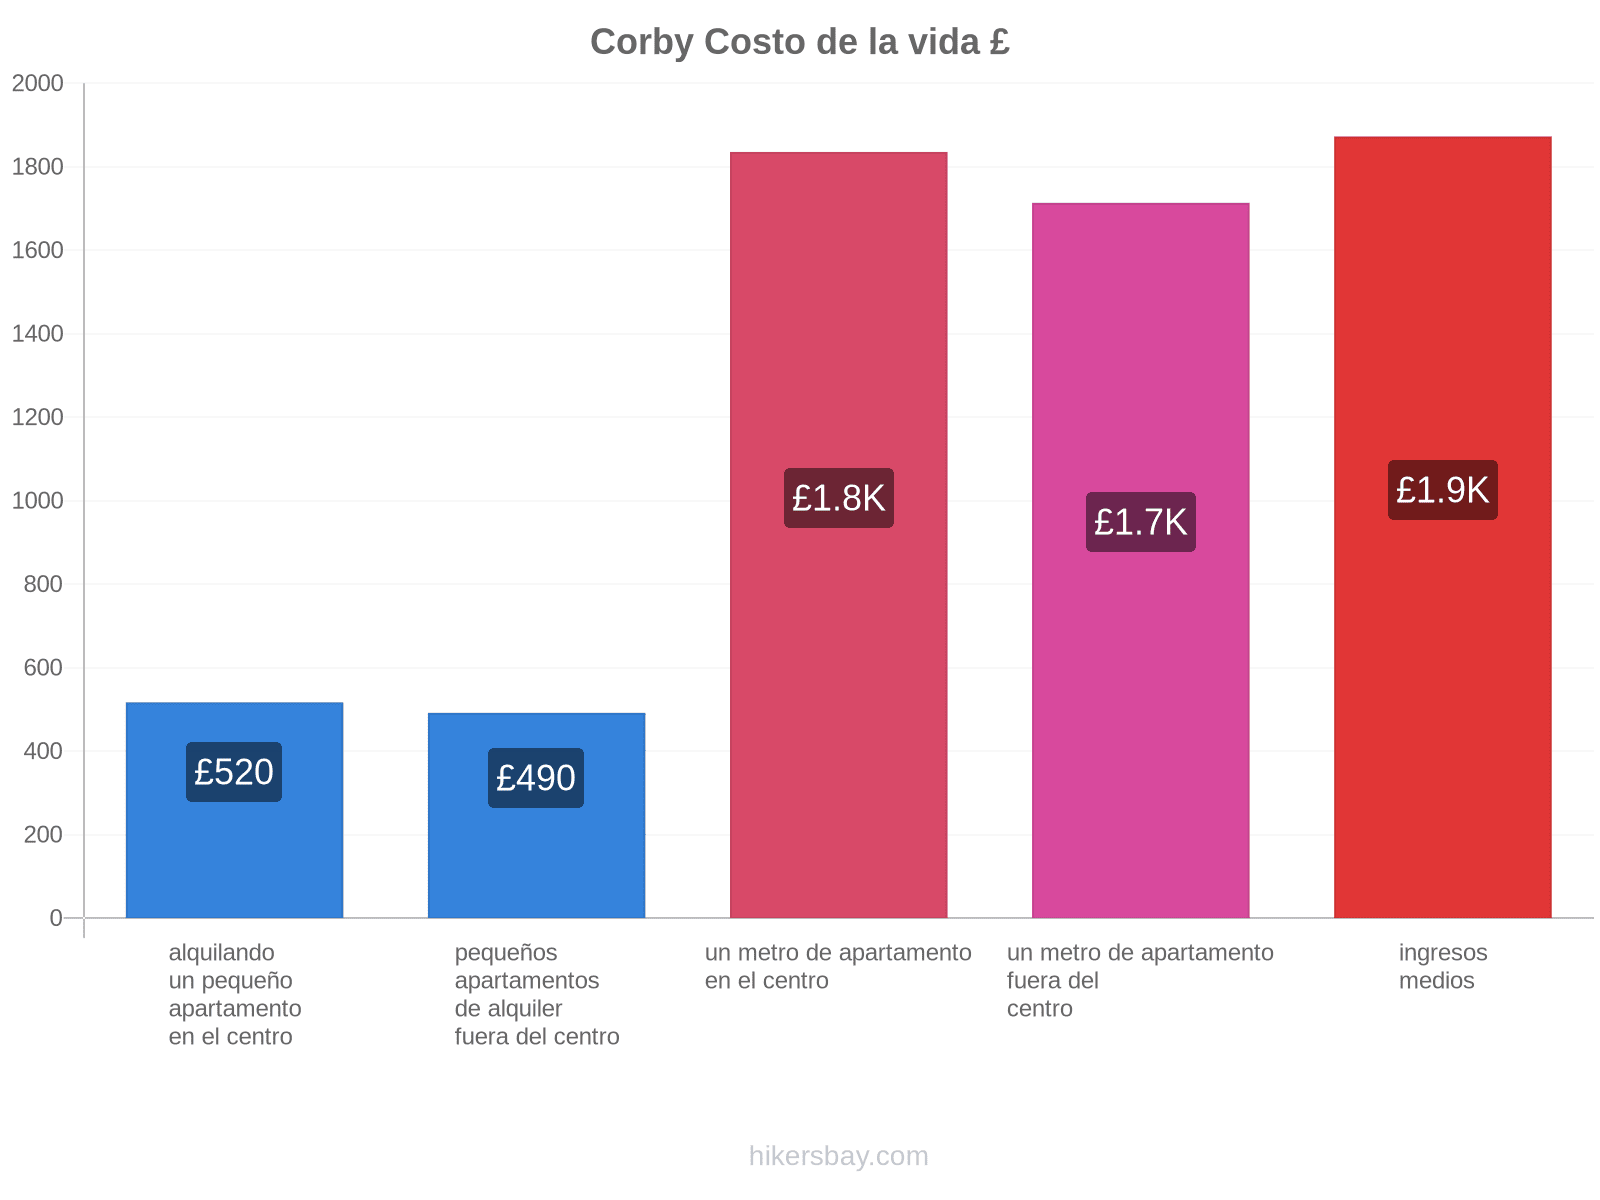 Corby costo de la vida hikersbay.com